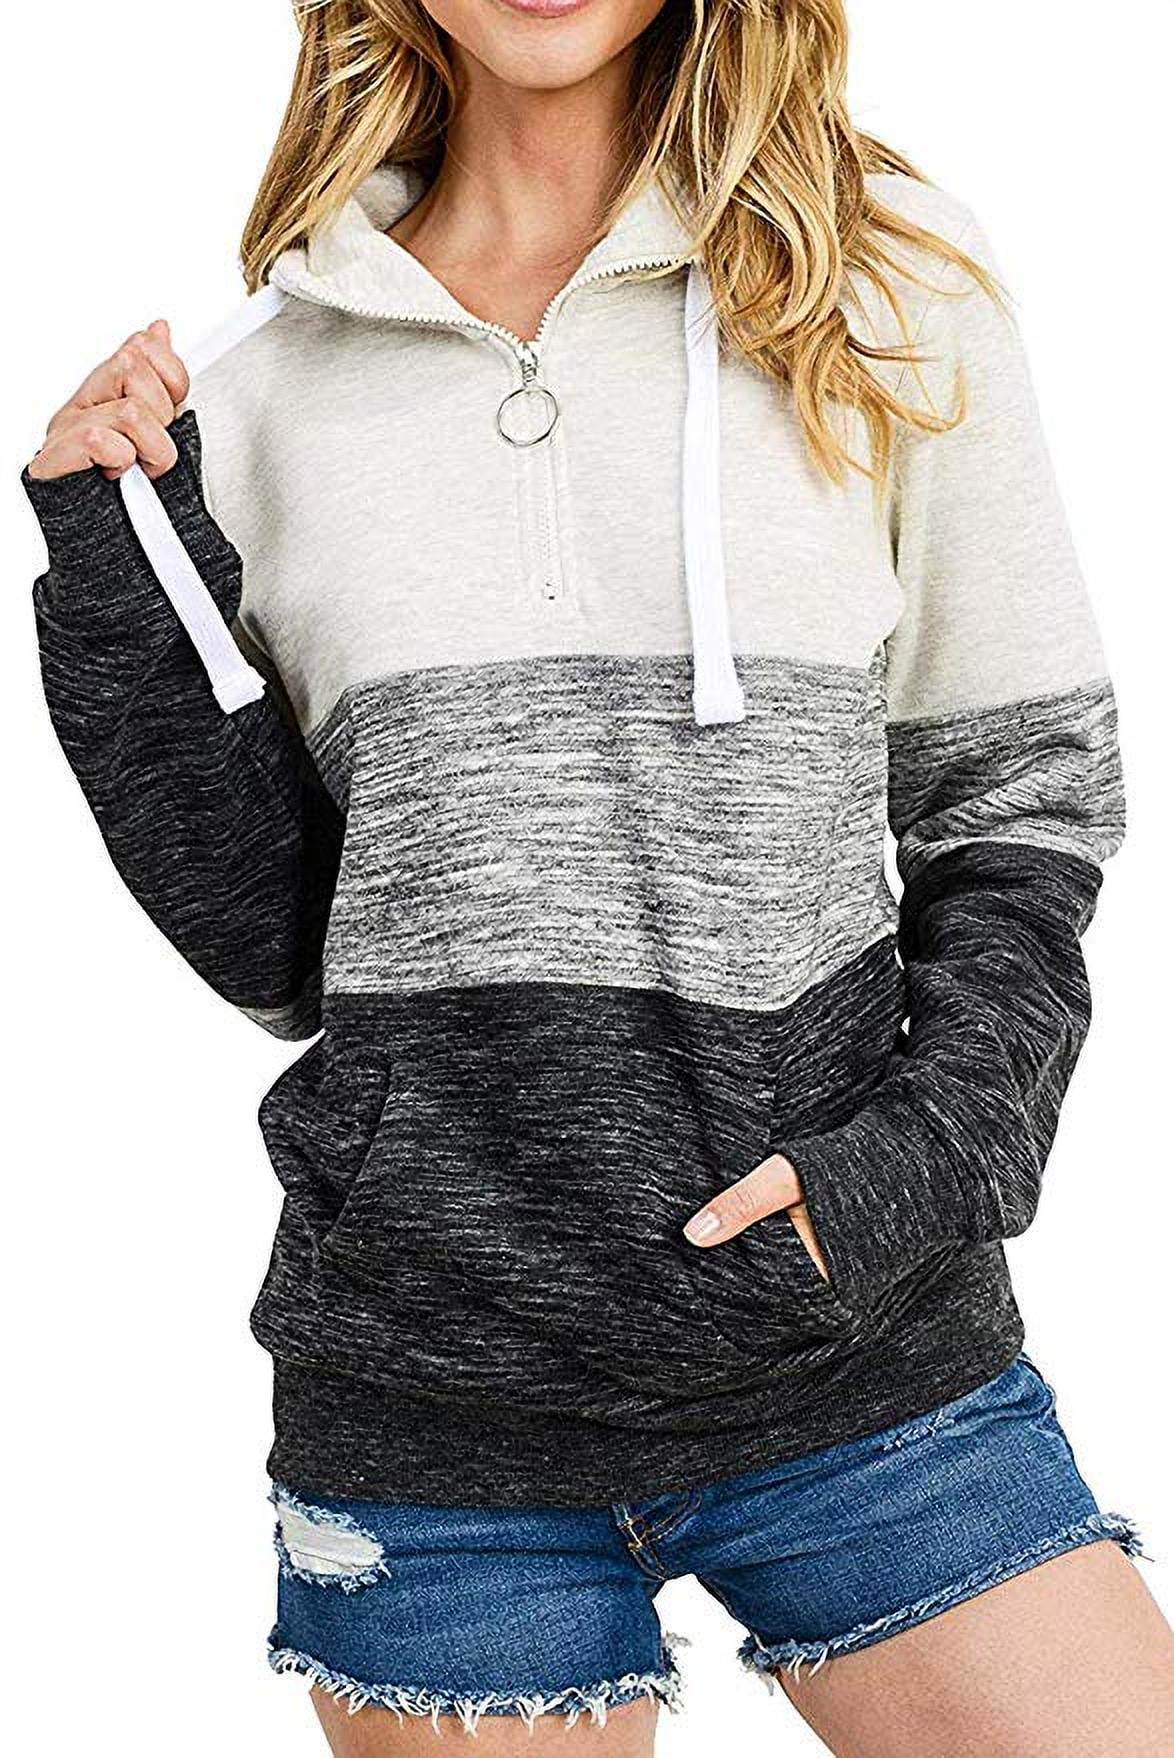 Womens Colorblock Hoodie Long Sleeve Fleece Hooded Pullover Sweatshirt Tops 